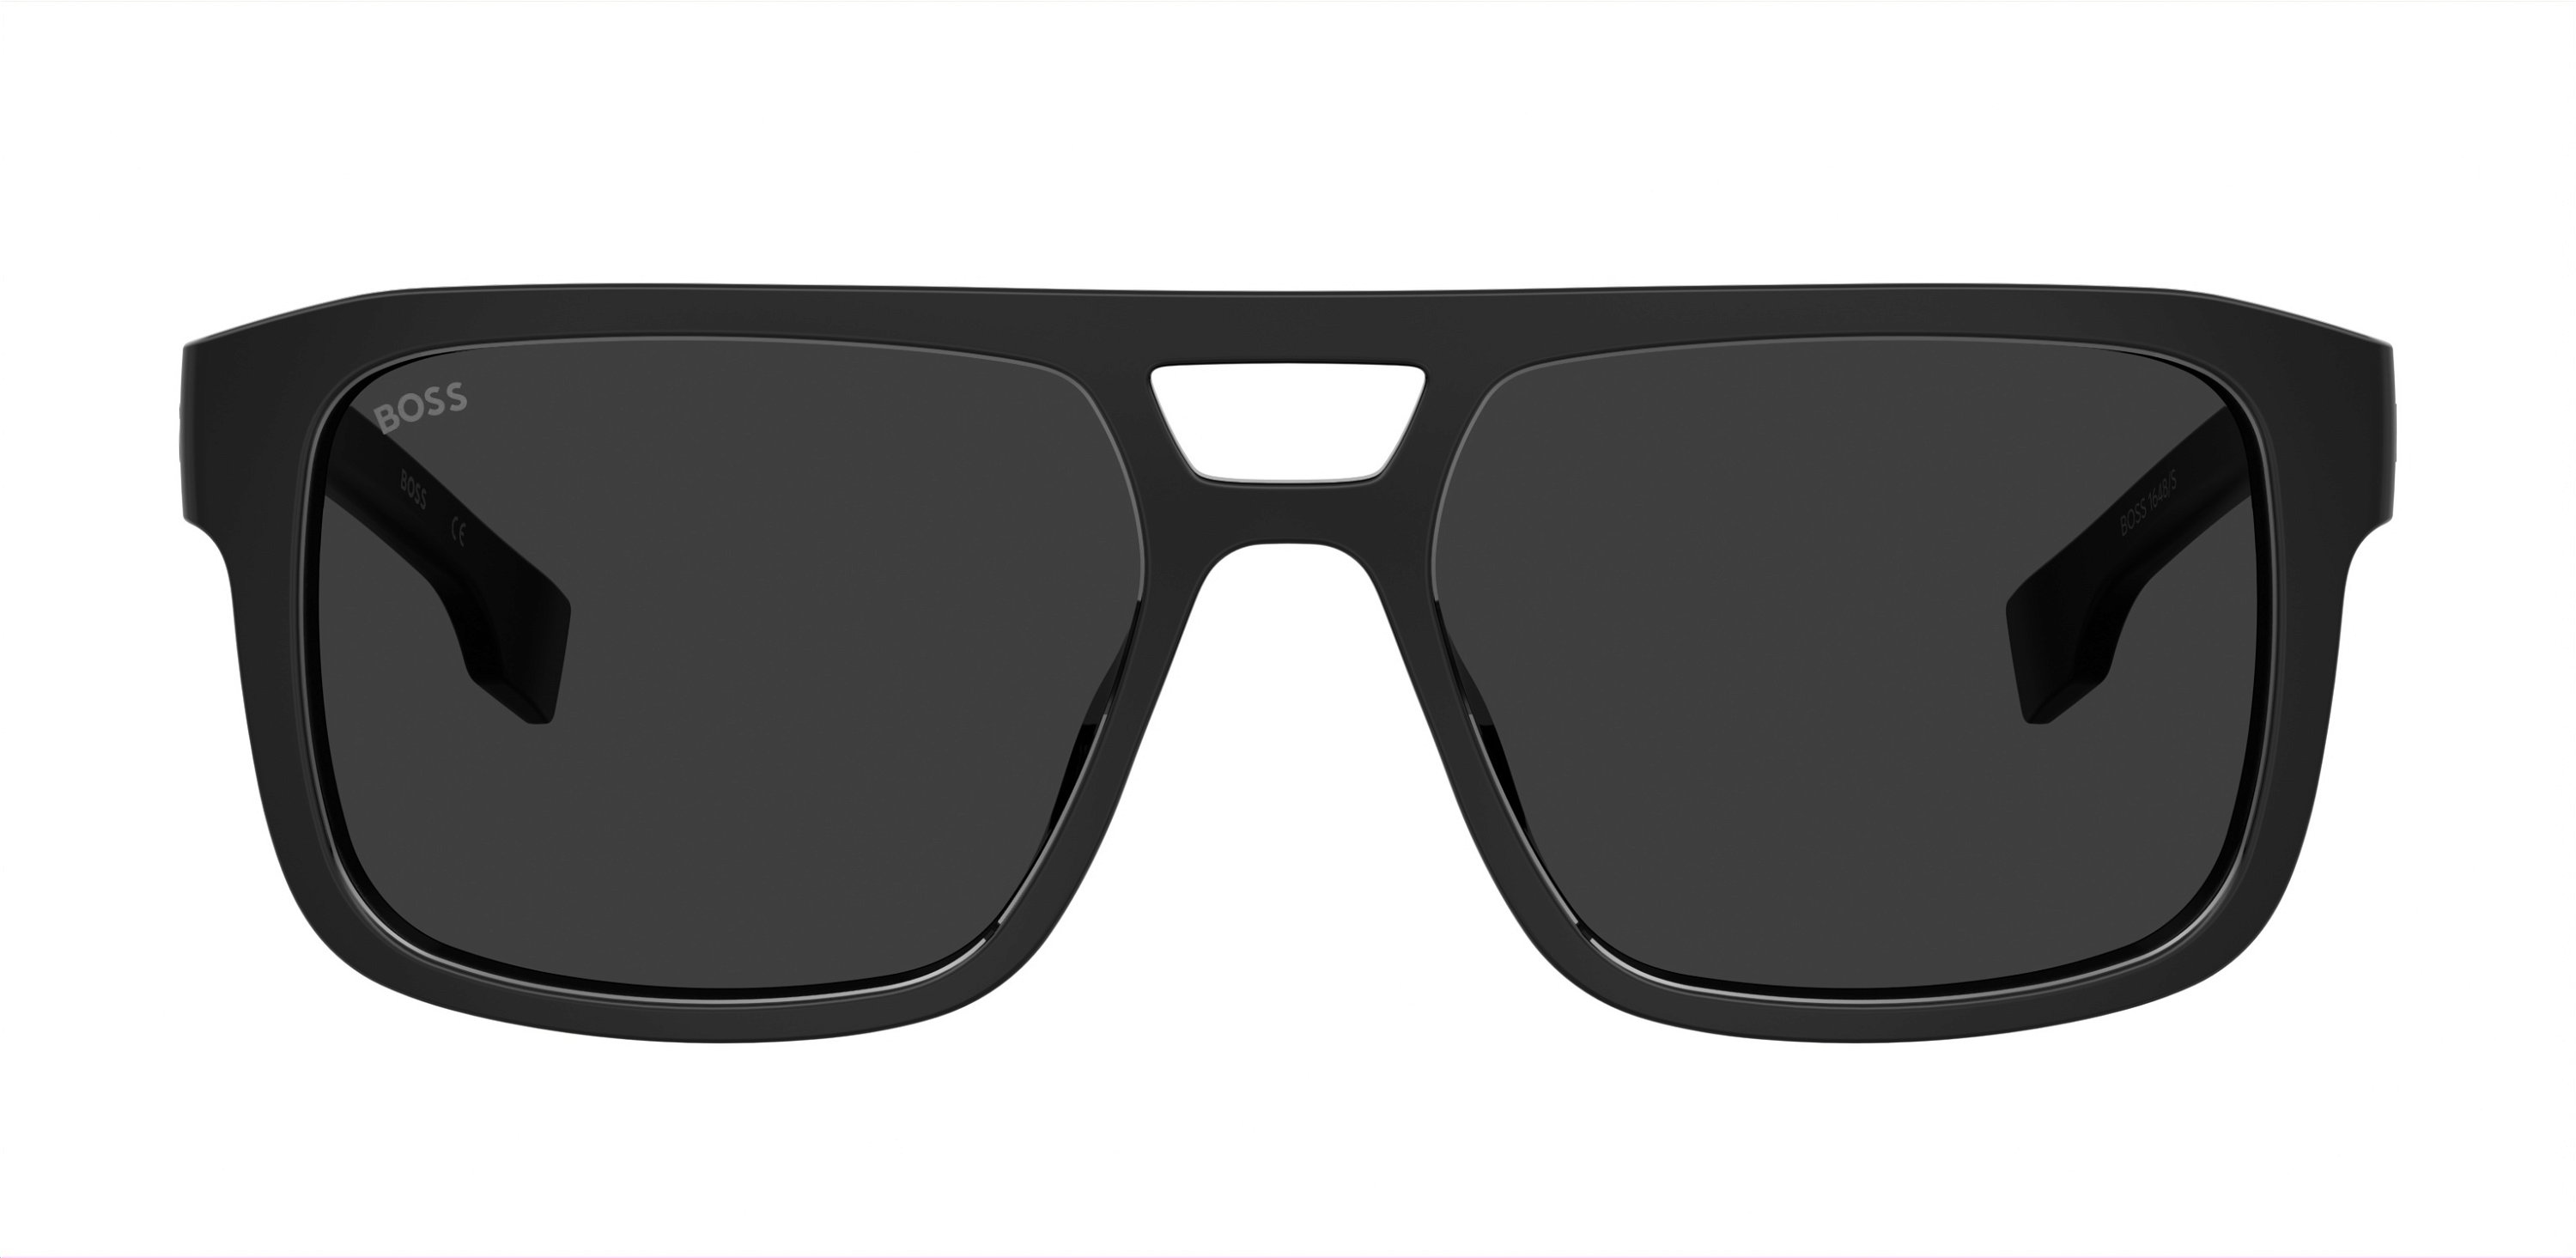 Das Bild zeigt die Sonnenbrille BOSS1648S 807 von der Marke BOSS in Schwarz.